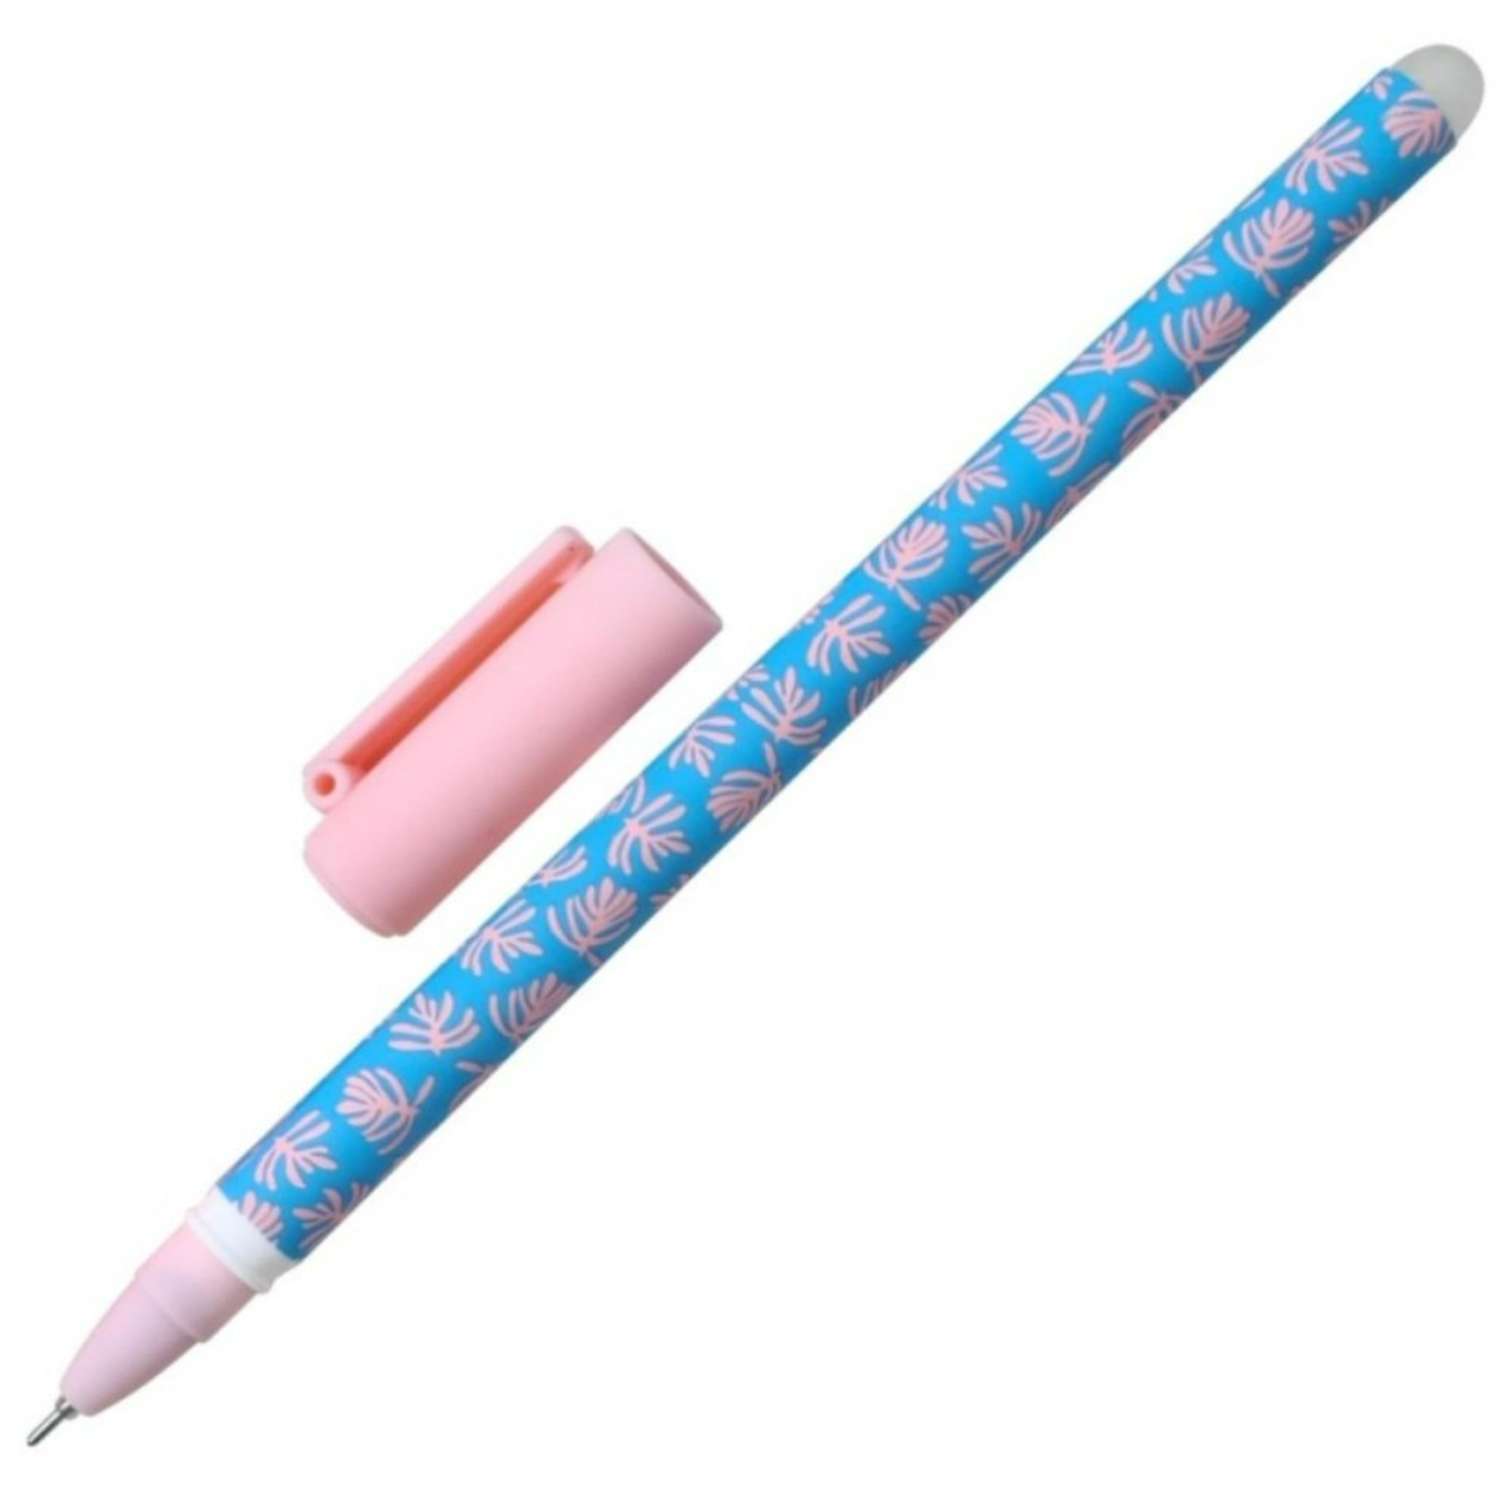 Ручка Be Smart гелевая 0.5 мм черный пиши-стирай fyr-fyr 7 штук - фото 1